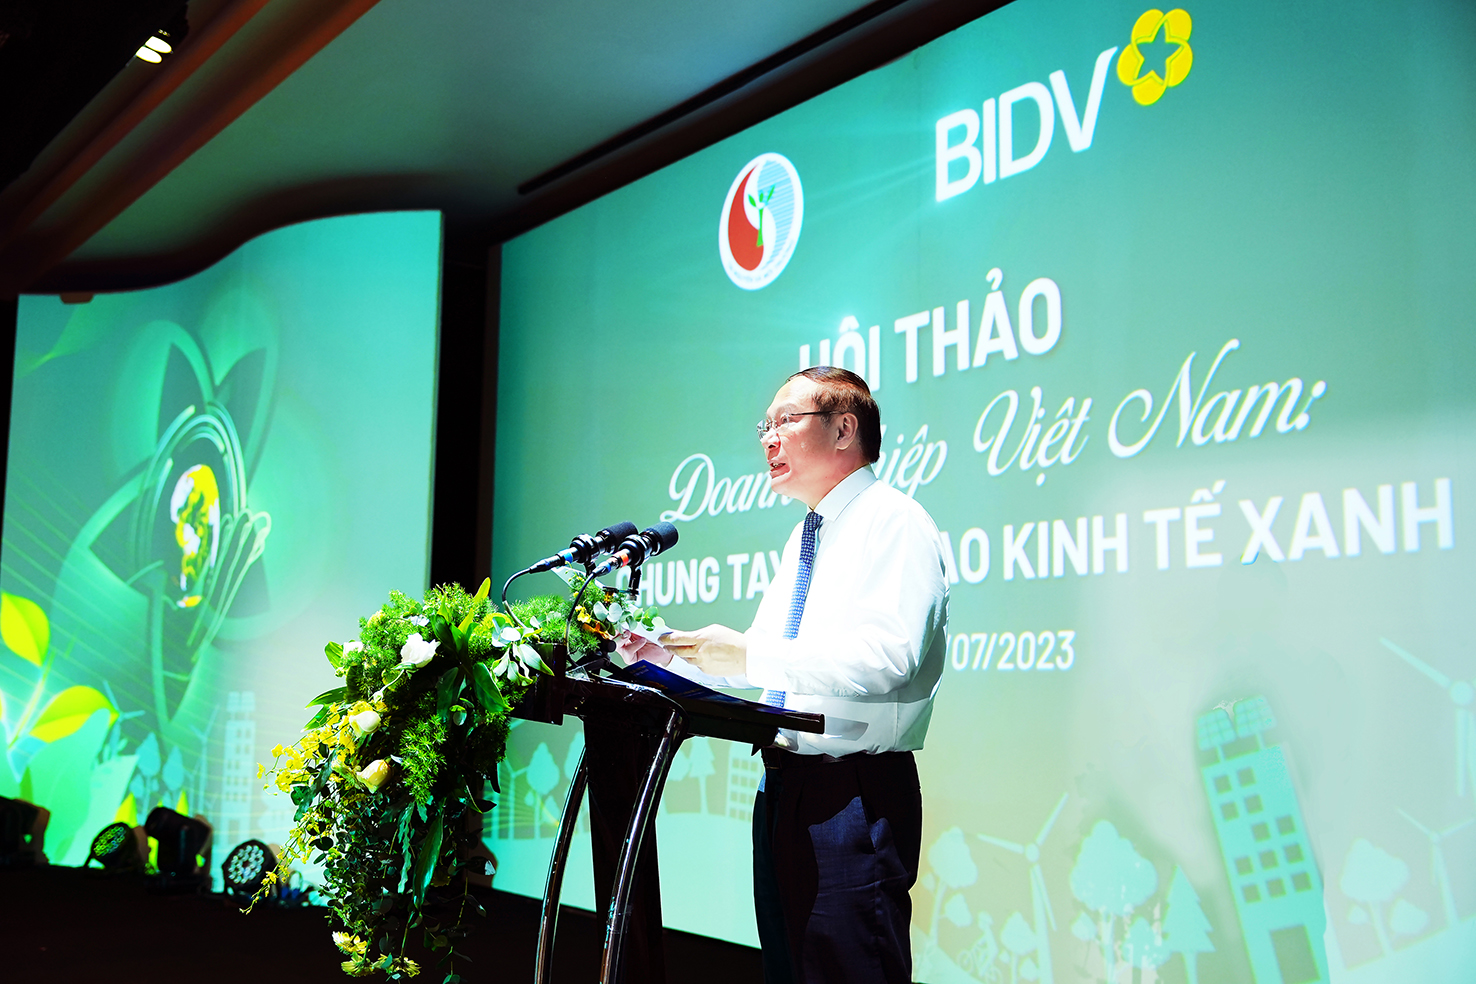 BIDV tổ chức Hội thảo “Doanh nghiệp Việt Nam - Chung tay kiến tạo Kinh tế Xanh” - Ảnh 1.